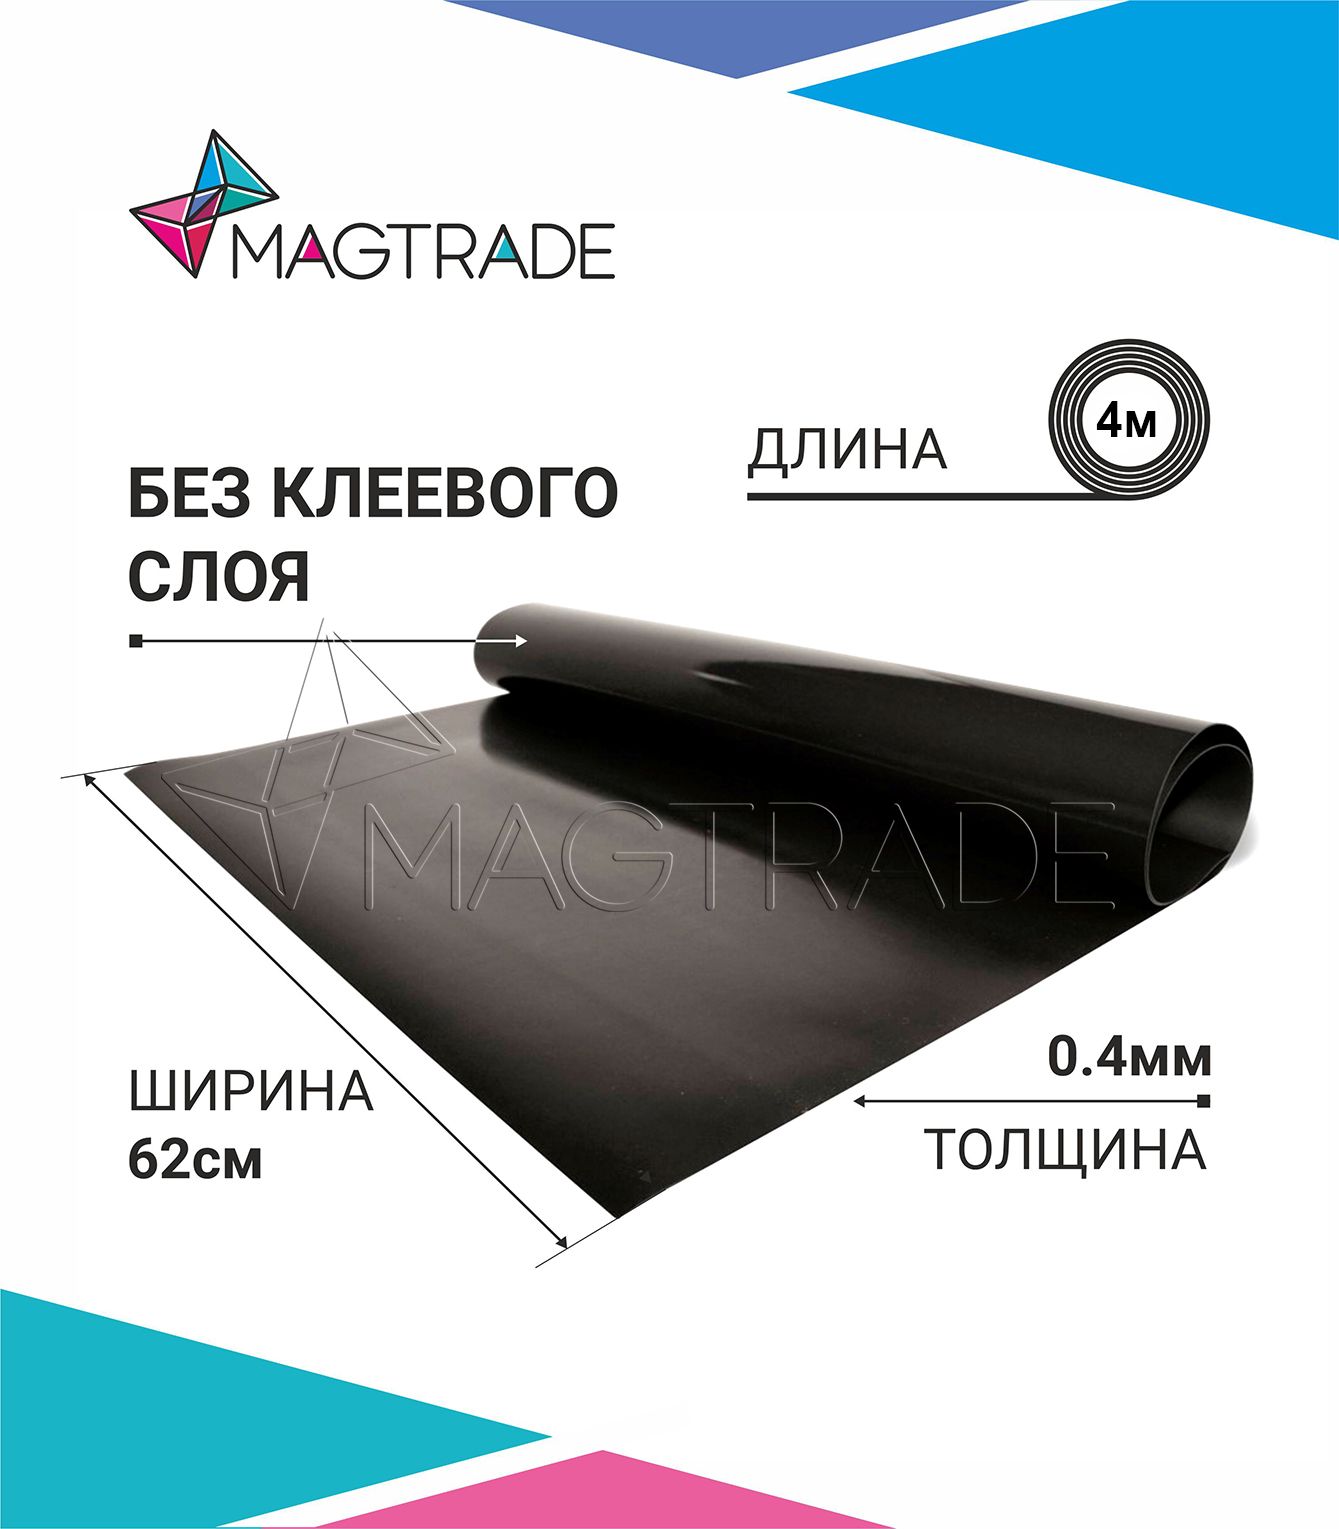 Магнитный винил MAGTRADE без клеевого слоя 0,62 х 4 м, толщина 0,4 мм, лист 4 метра